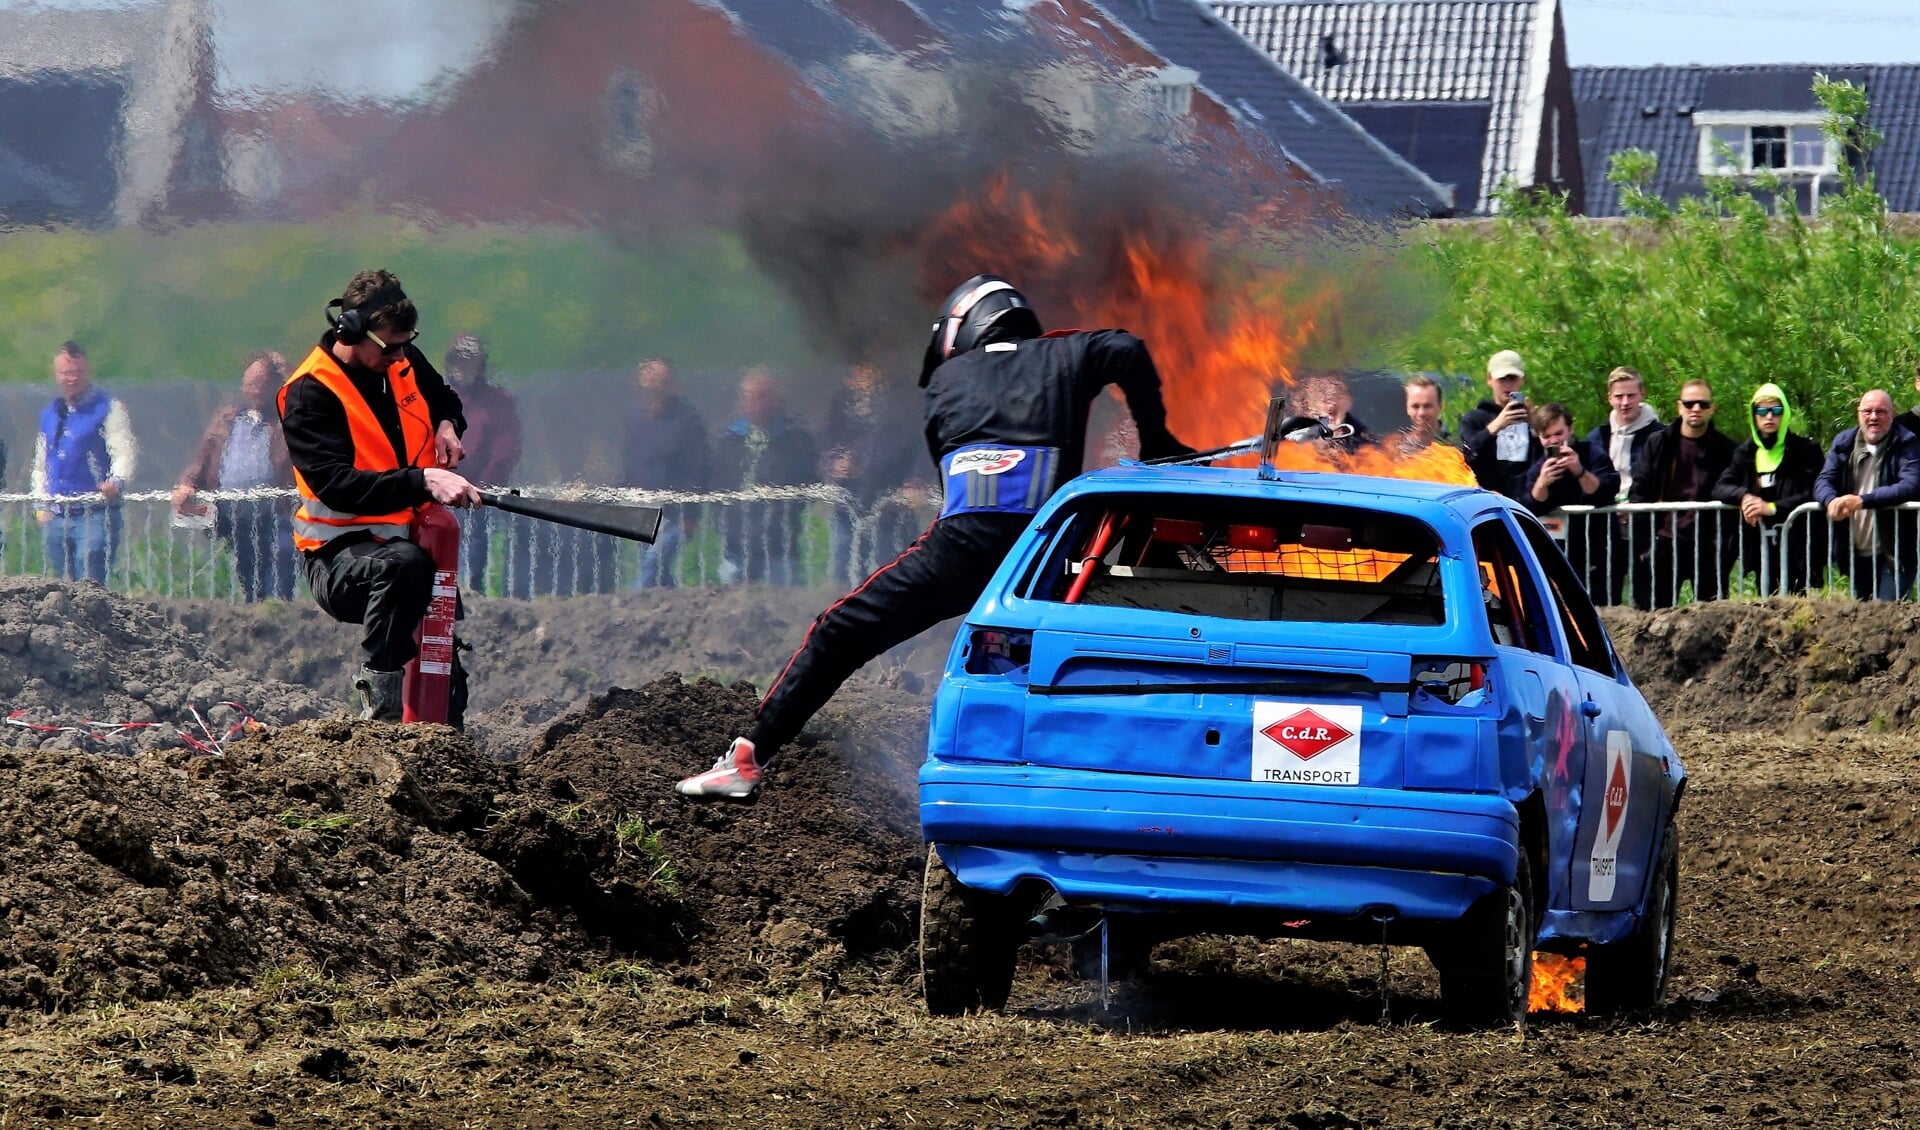 Coureur Hubert Harmsen kon zich nog net in veiligheid brengen toen tijdens de race zijn auto in brand vloog.